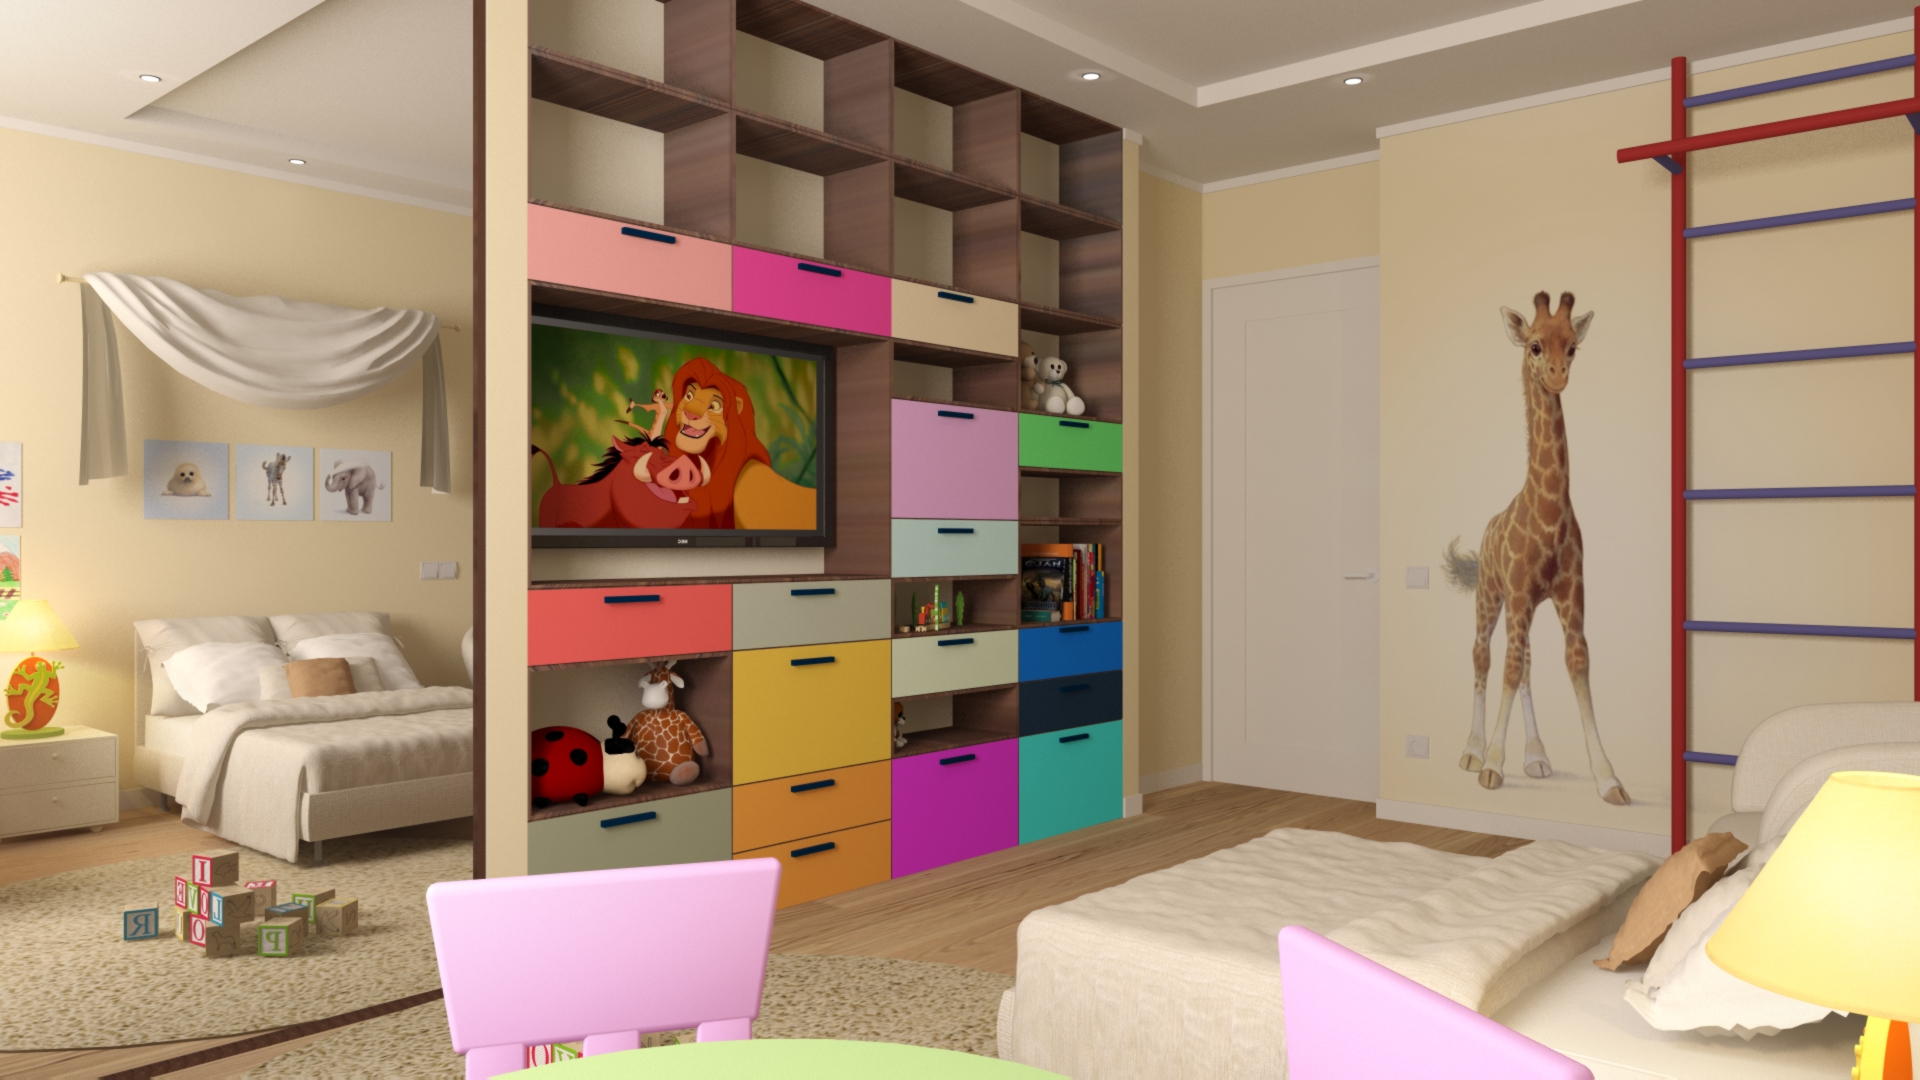 Интерьер комнаты 14 кв м: идеи обустройства небольшого помещения